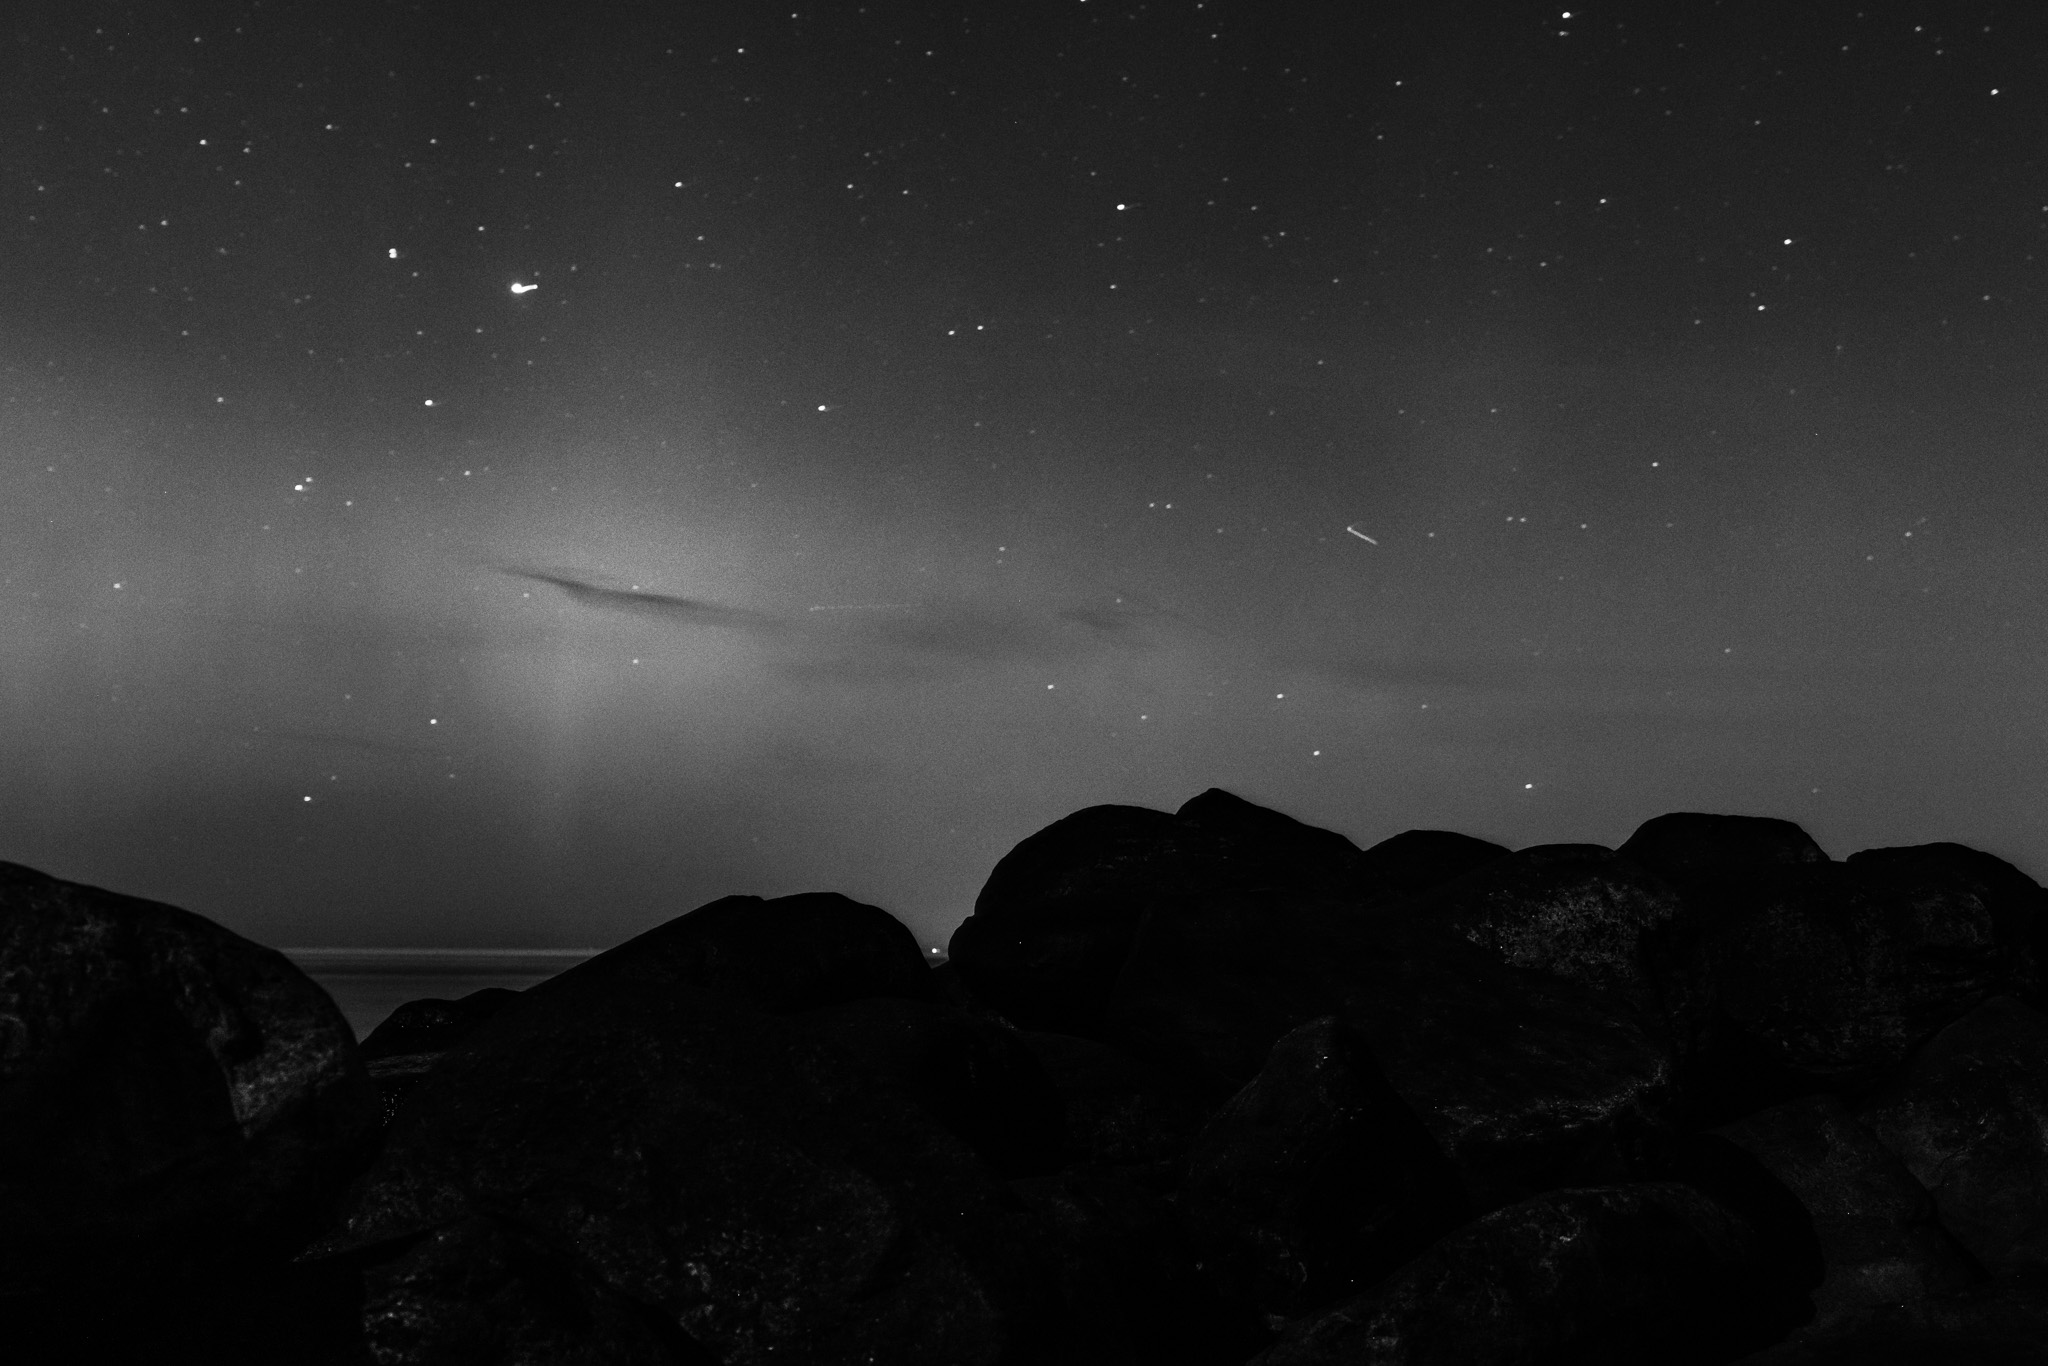 aurora-borealis-northern-lights-denmark-gilleleje-gegenwind-astro-photography-6